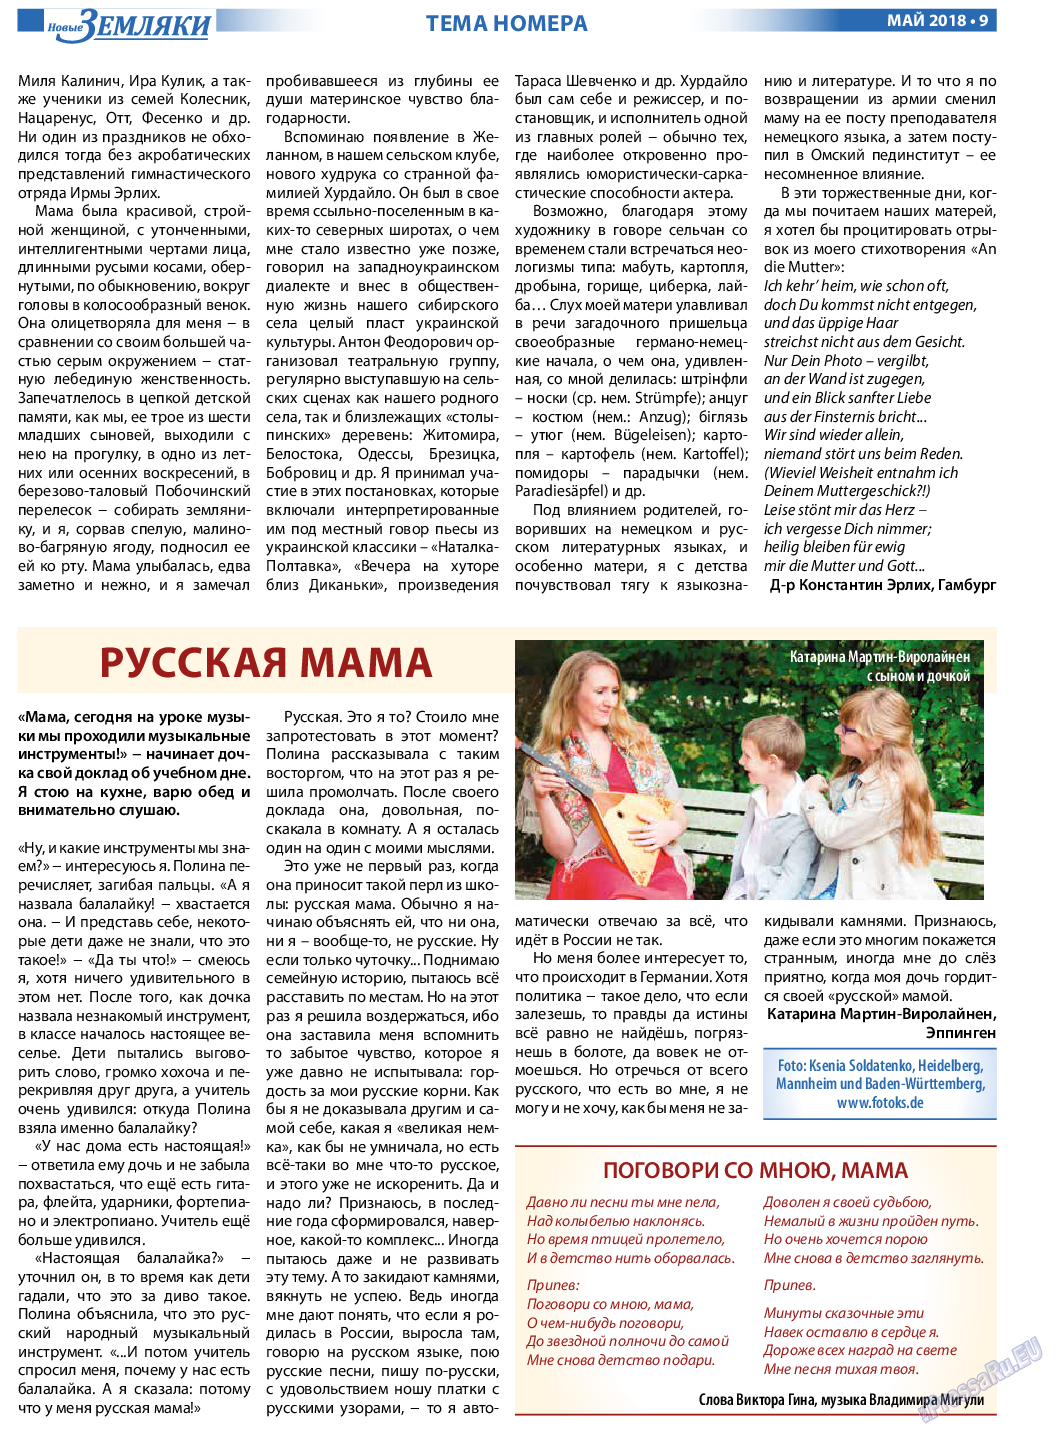 Новые Земляки, газета. 2018 №5 стр.9